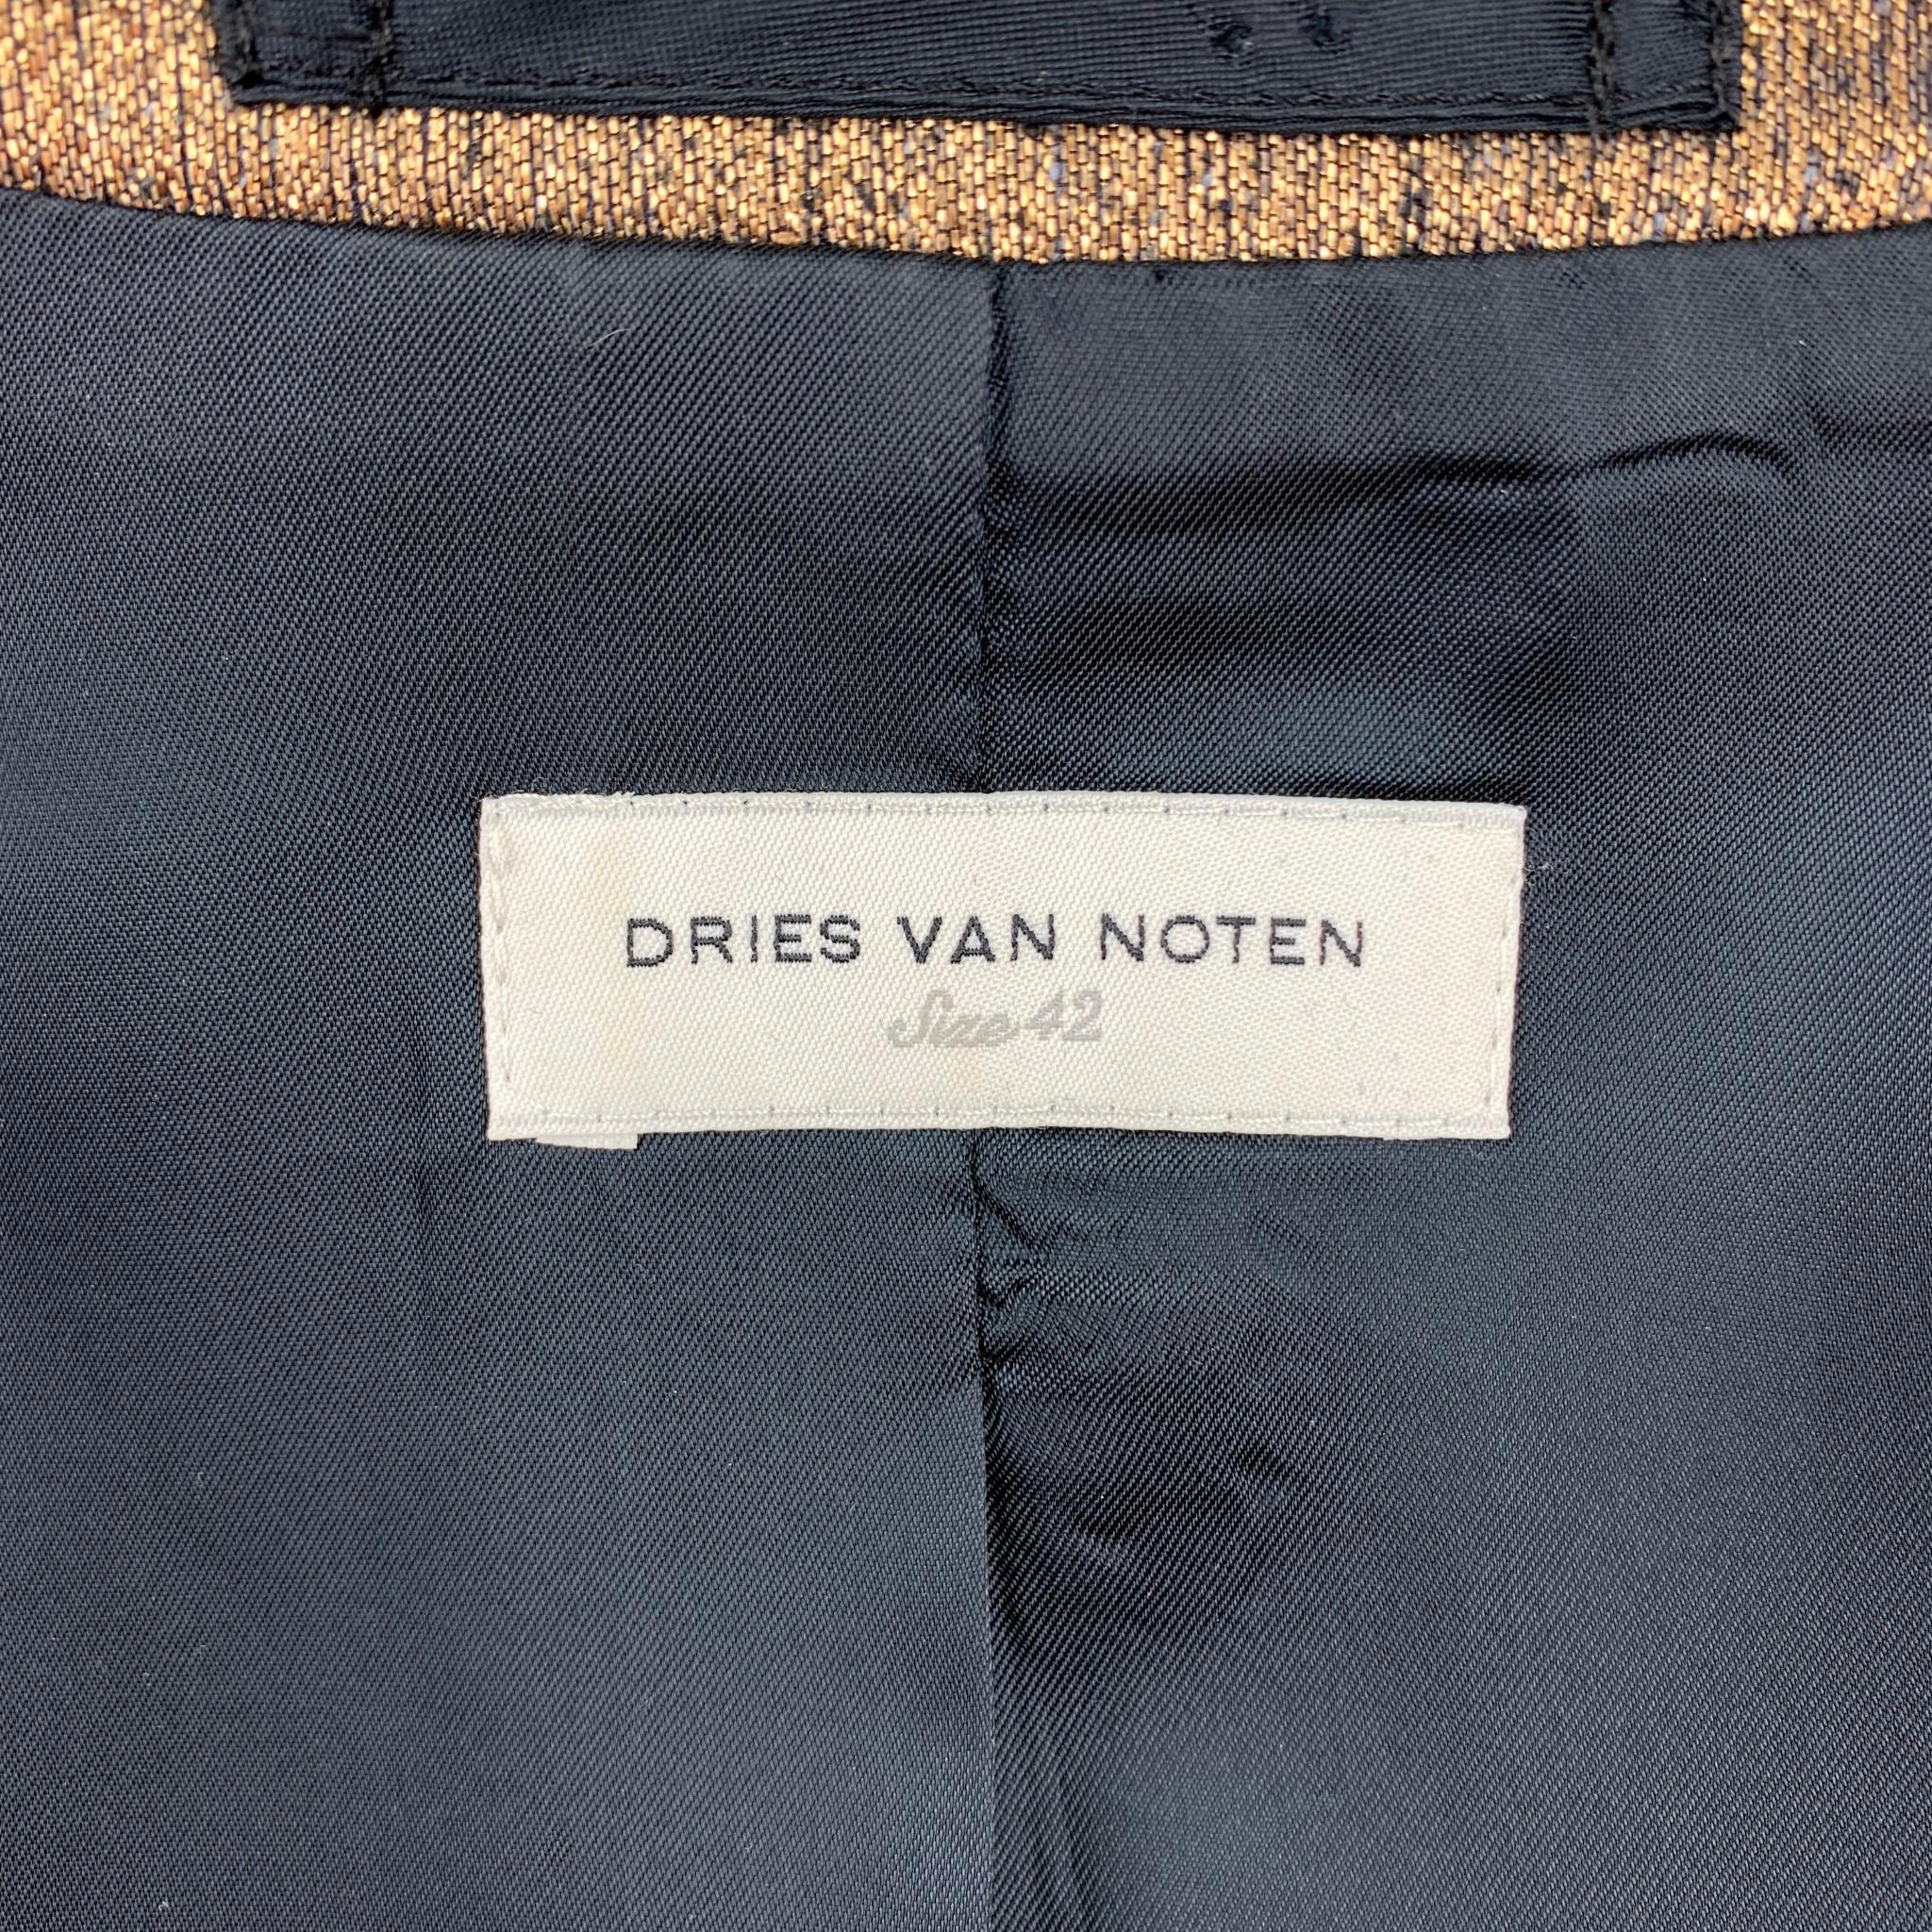 DRIES VAN NOTEN Size 10 Gold Textured Silk Blend Jacket Blazer 2